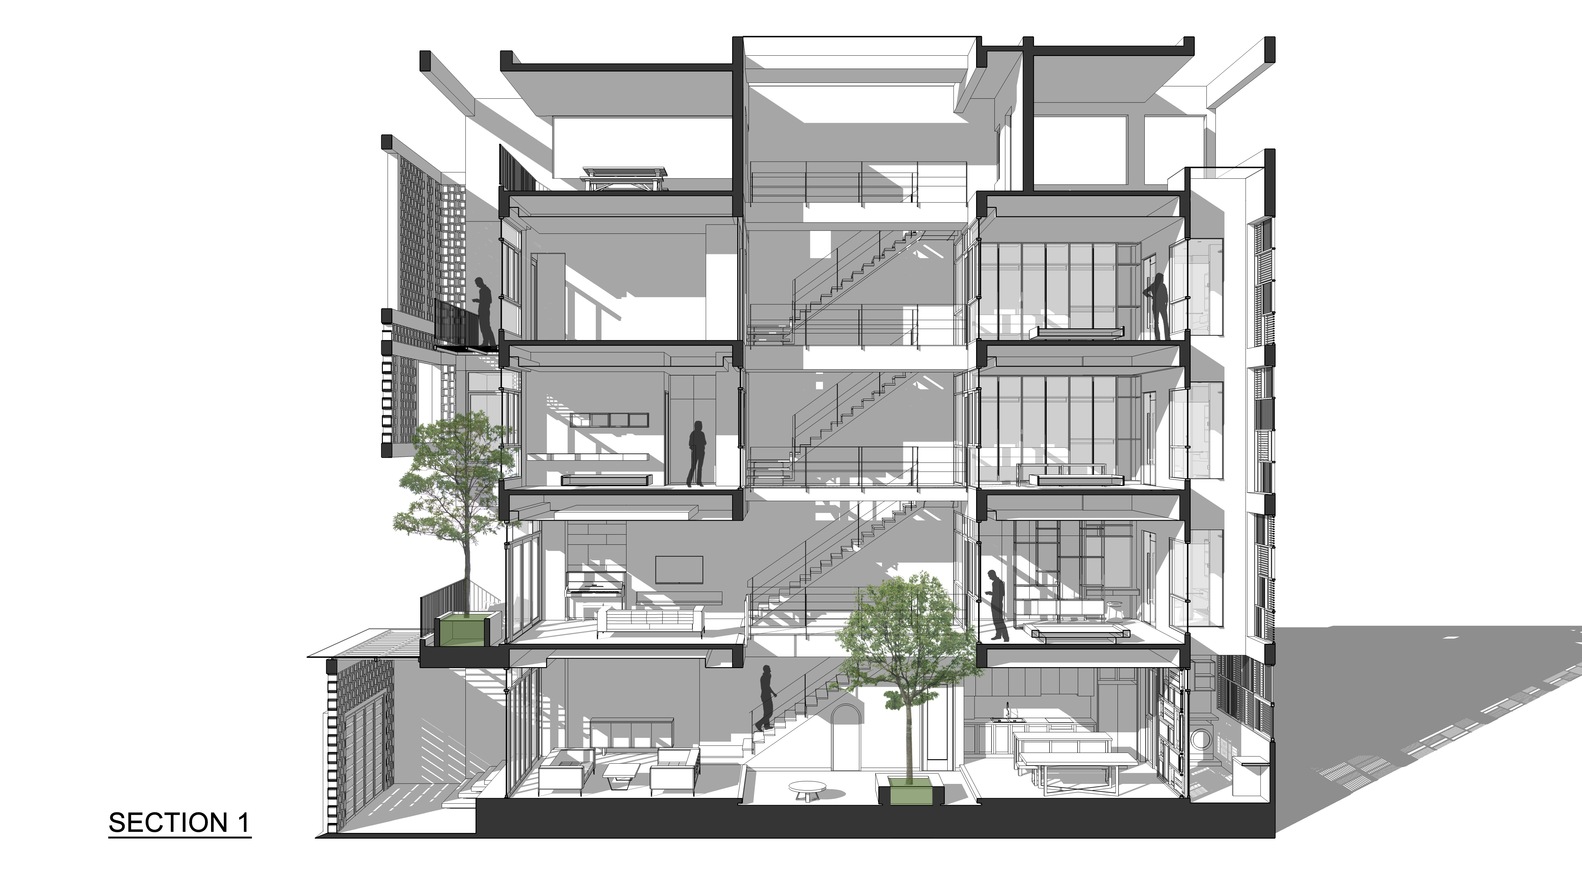 Thiết kế hiện đại kết hợp yếu tố truyền thống Bắc bộ của ngôi nhà 5 tầng ở Hà Nội - Ảnh 34